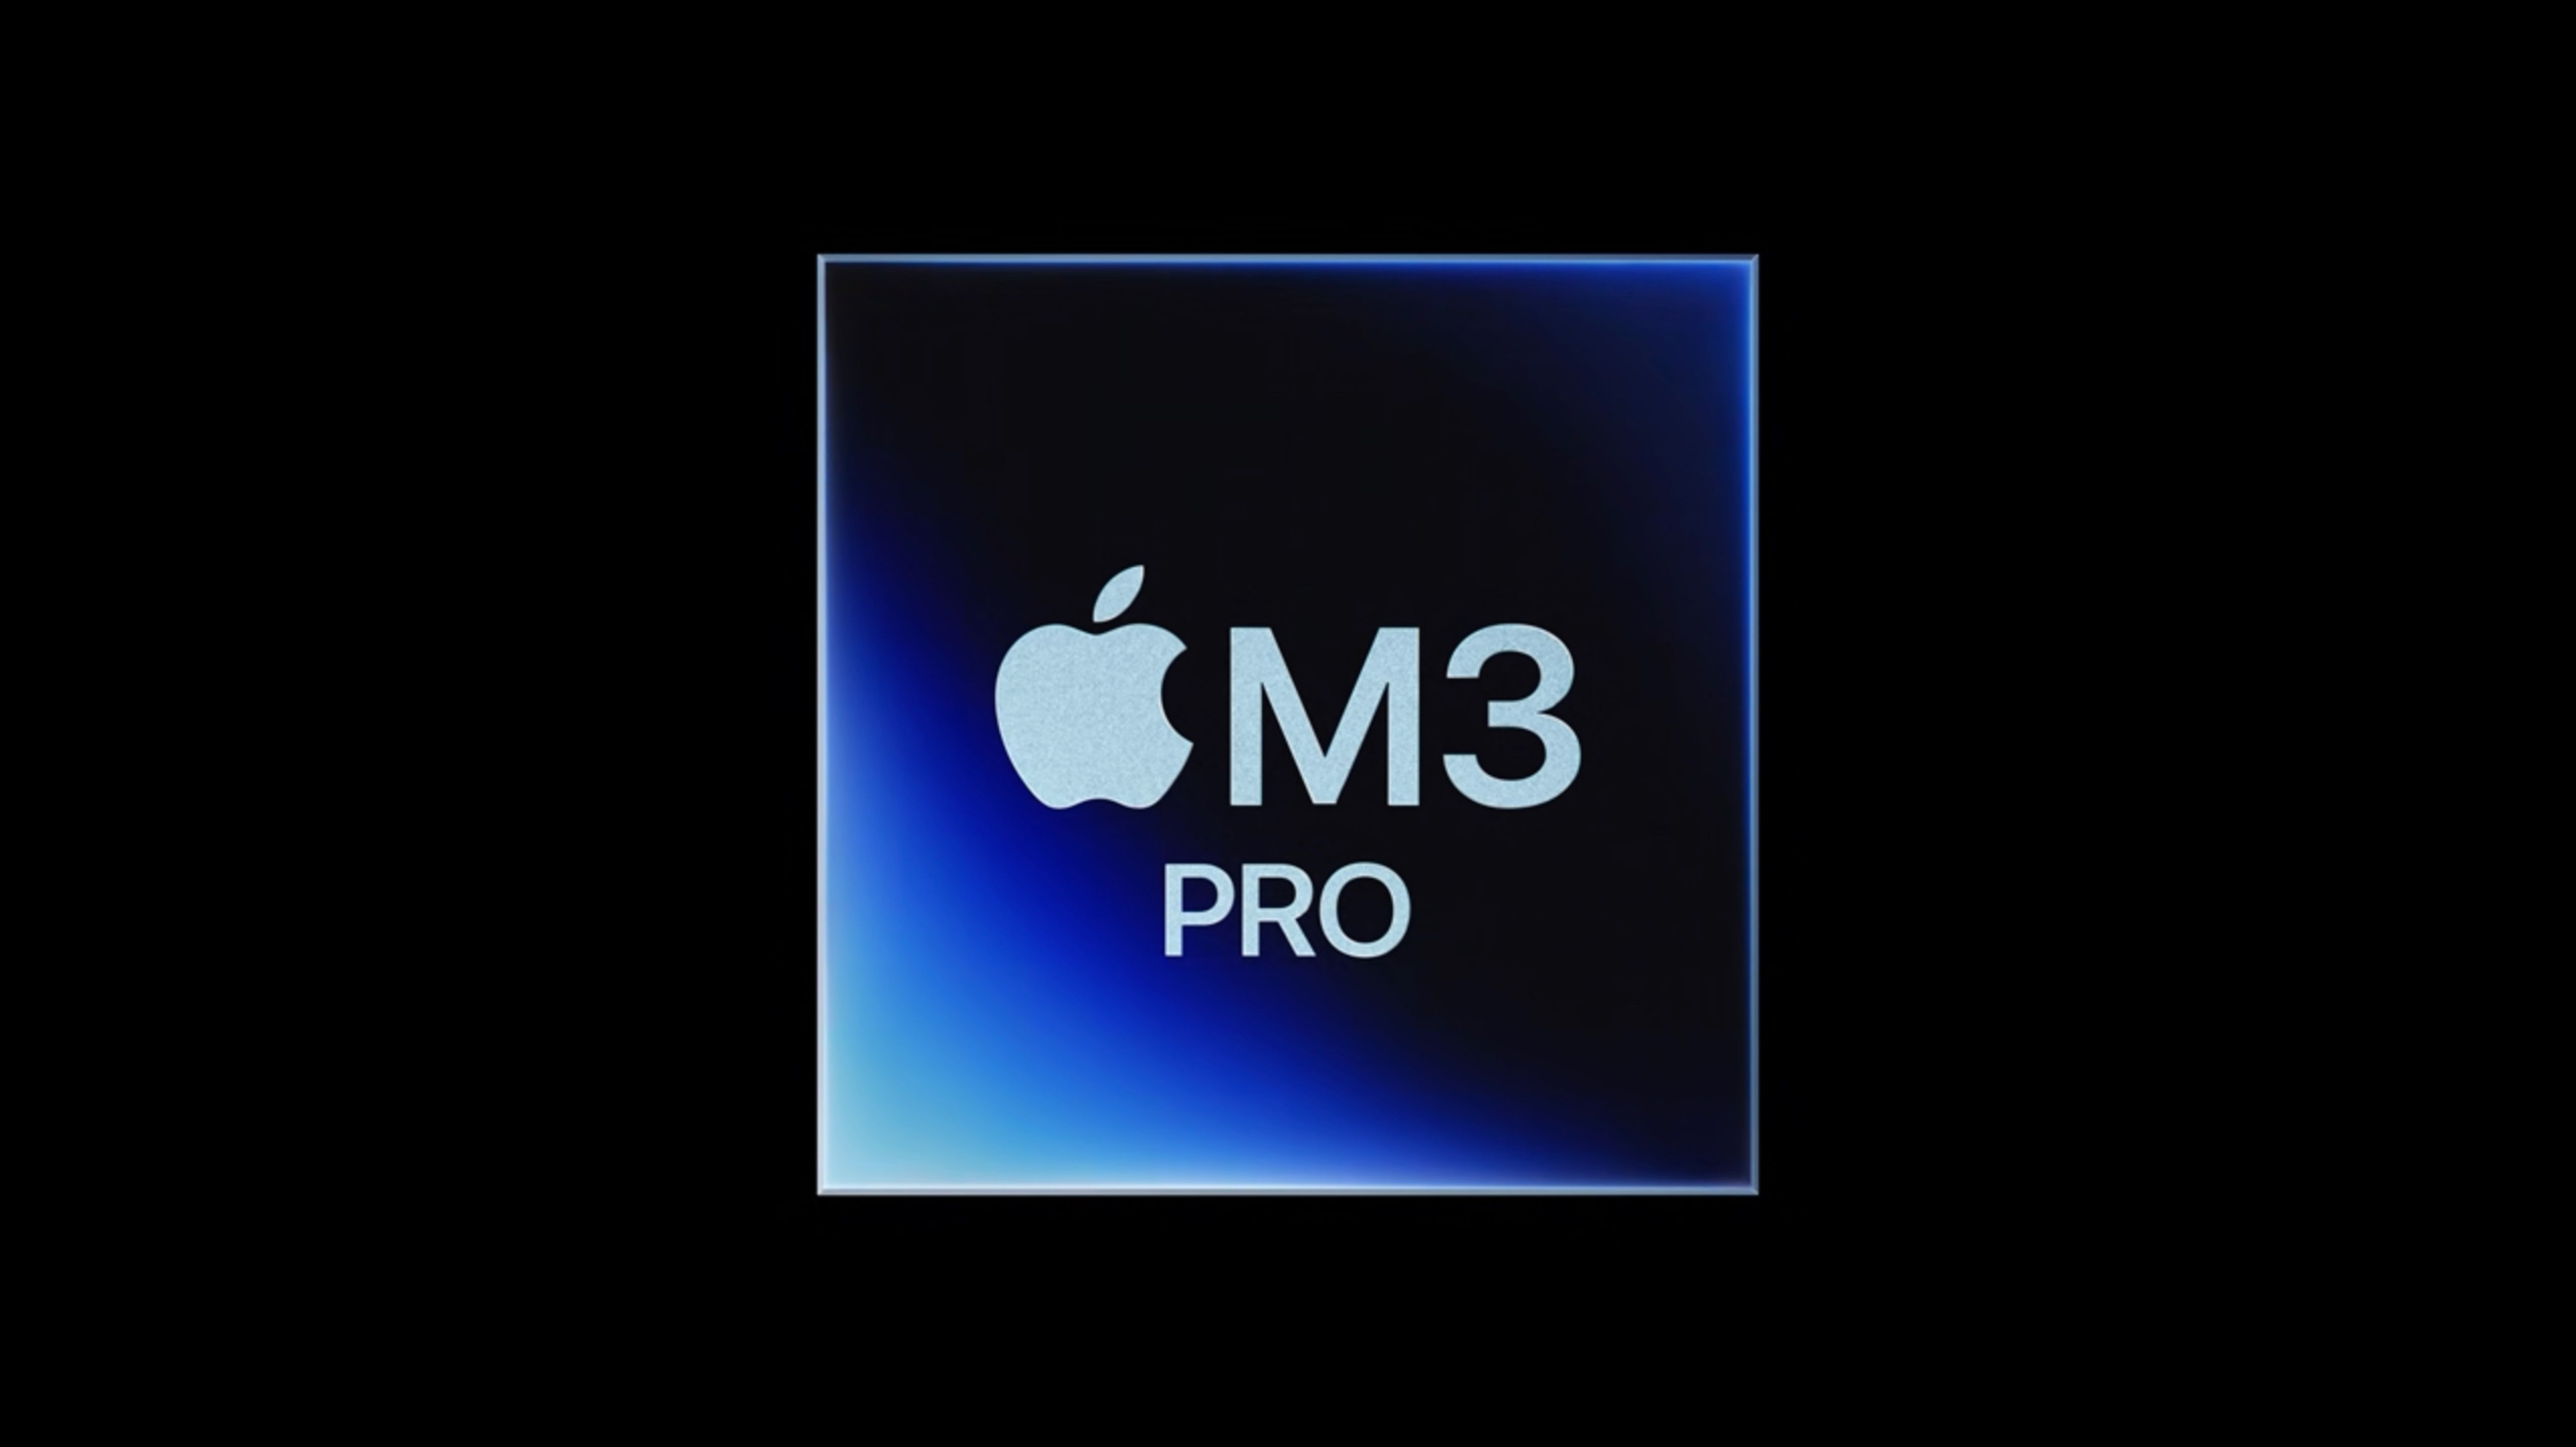 M3 Pro mikroshēma ir tik tikko ātrāka par M2 Pro mikroshēmu nepārbaudītā etalonā